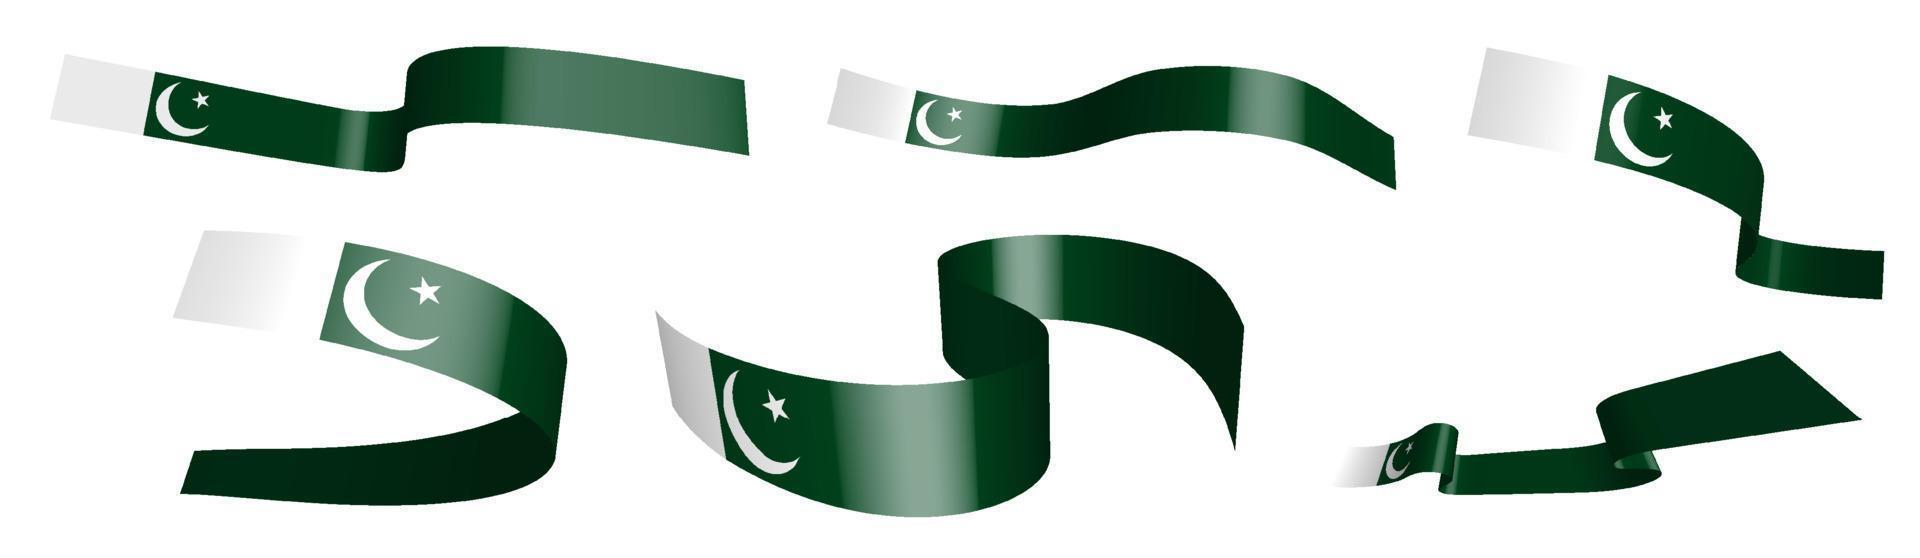 satz feiertagsbänder. Flagge der islamischen Republik Pakistan weht im Wind. Trennung in untere und obere Schicht. Gestaltungselement. Vektor auf weißem Hintergrund